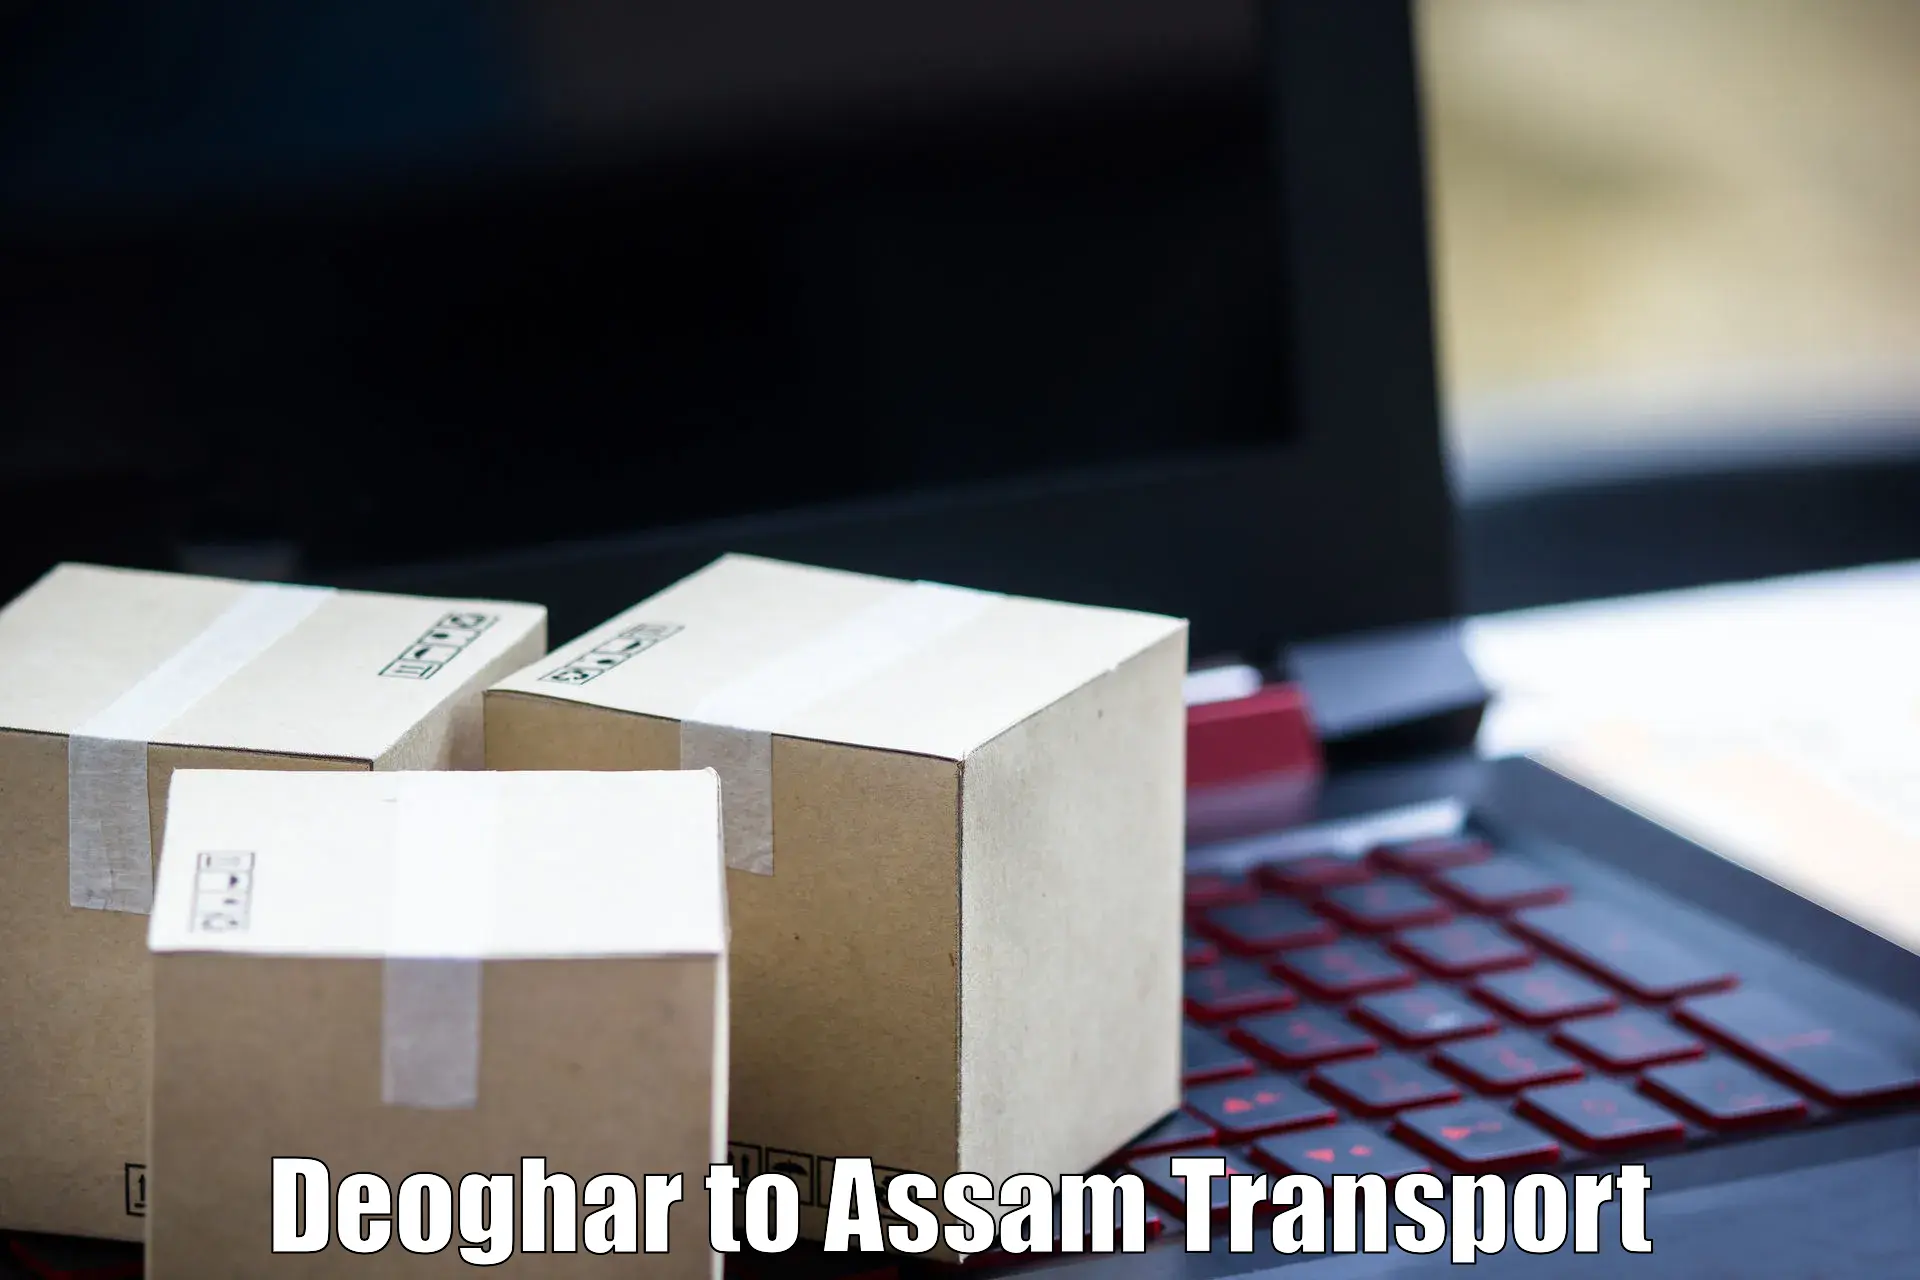 Nearest transport service Deoghar to Assam